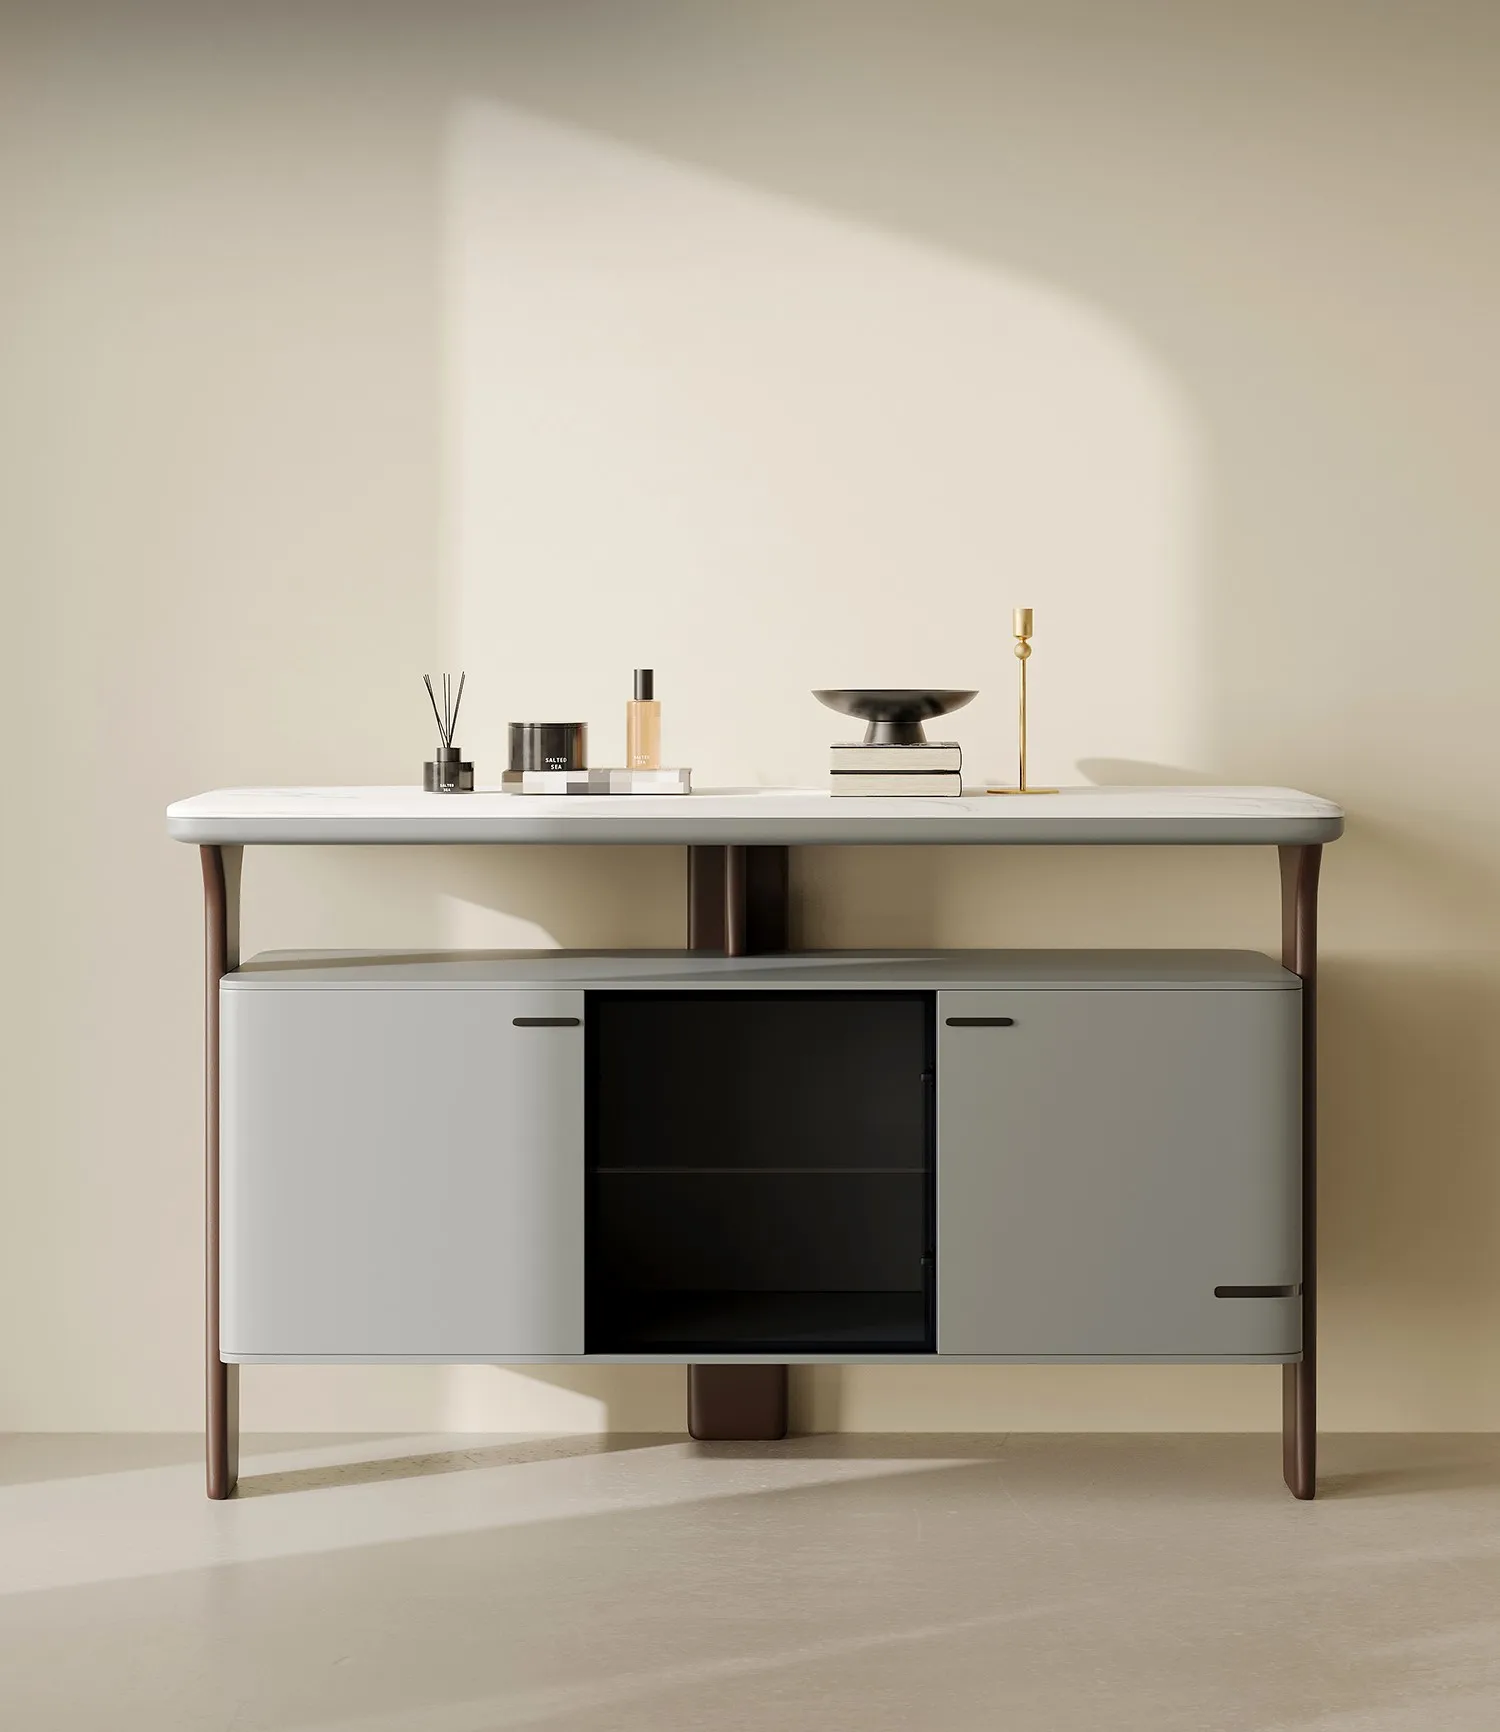 Модерен и минималистичен мрамор шкаф за съхранение на вещи за домашно използване, с висока стена шкаф и маса за странично шкафче3